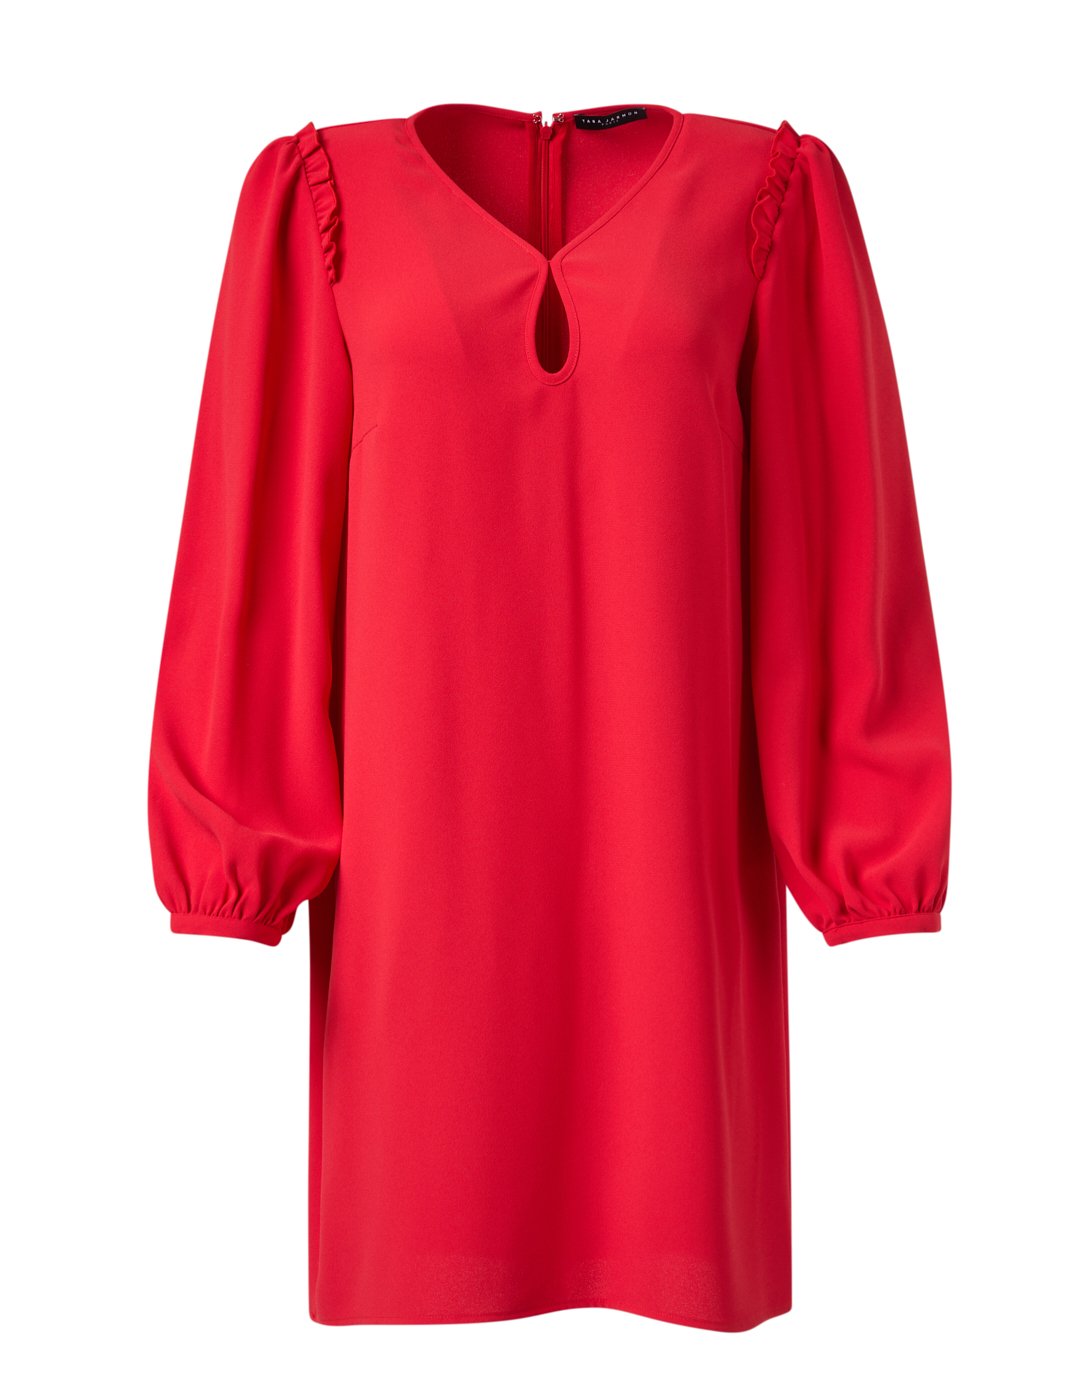 Tara Jarmon Ruffa Dress in Red.jpg